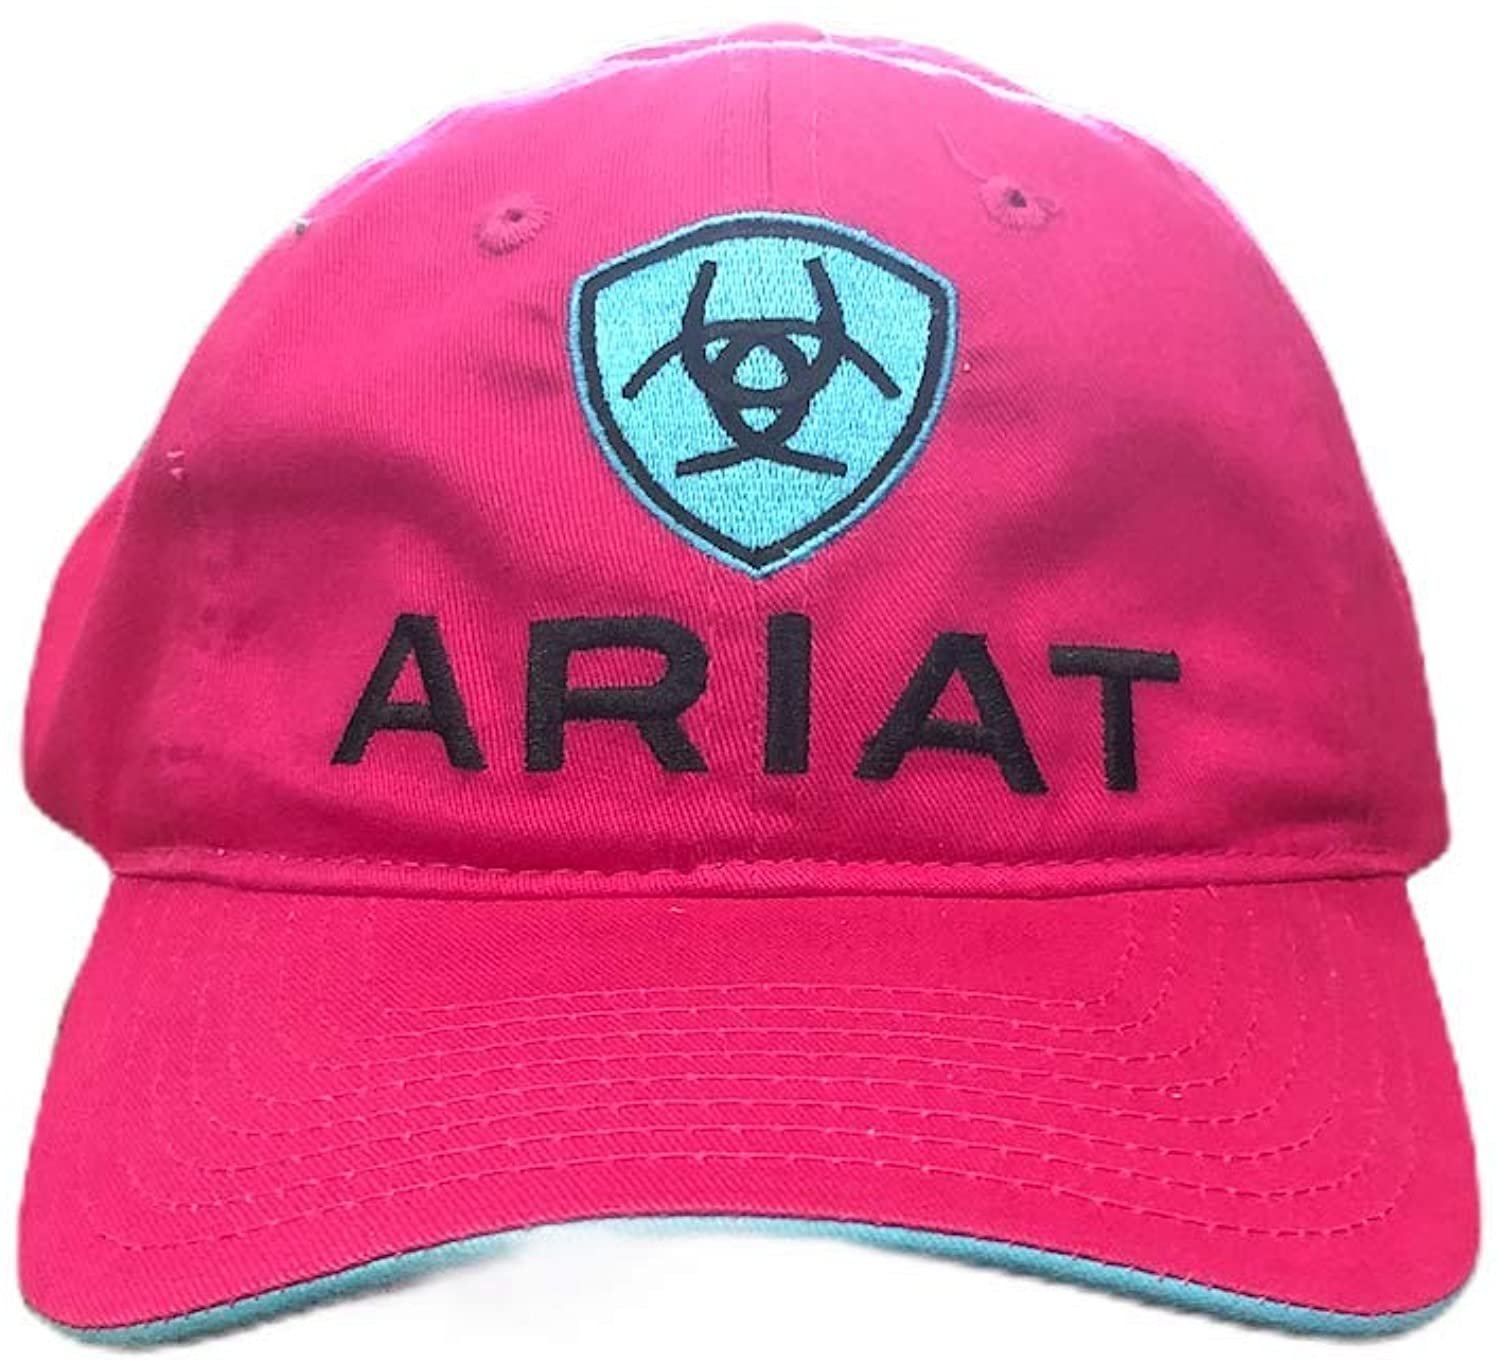 pink ariat hat